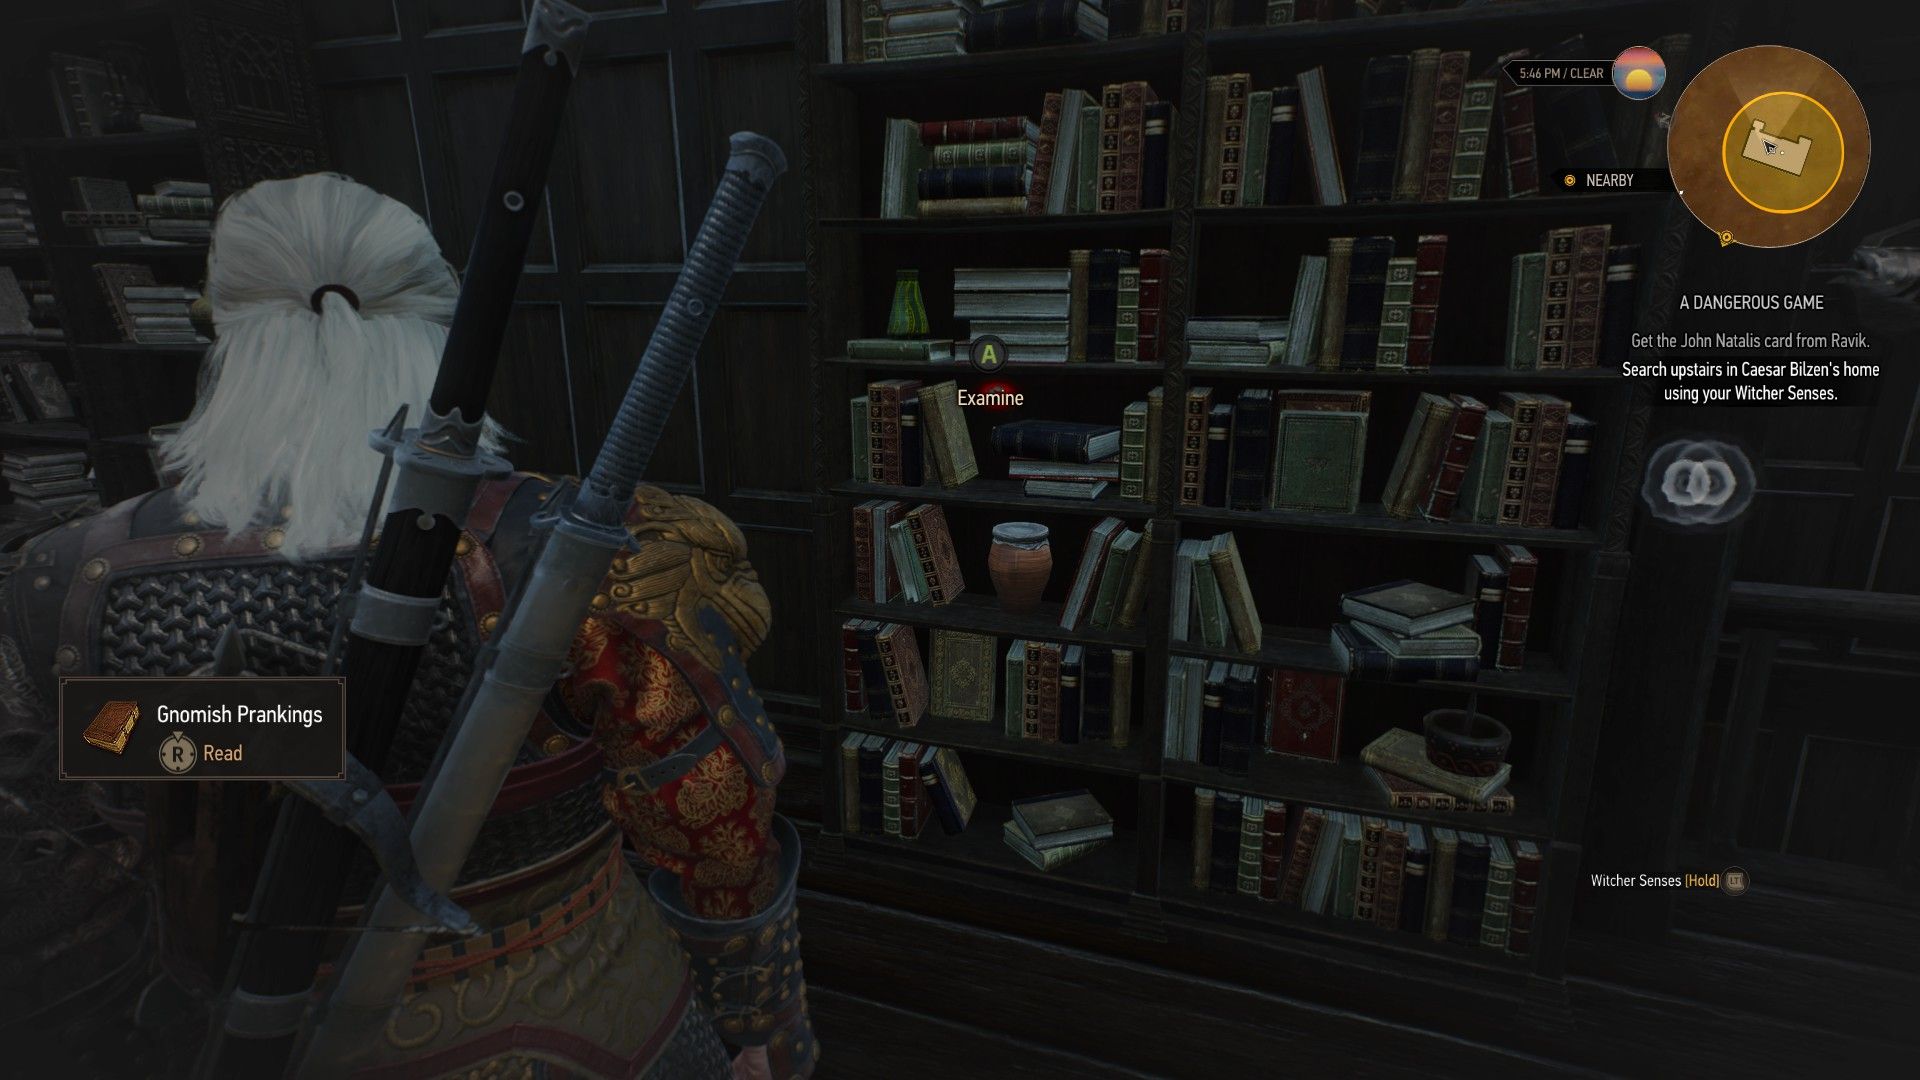 A screenshot of Geralt's Witcher Senses highlighting a hidden mechanism inside a bookshelf.